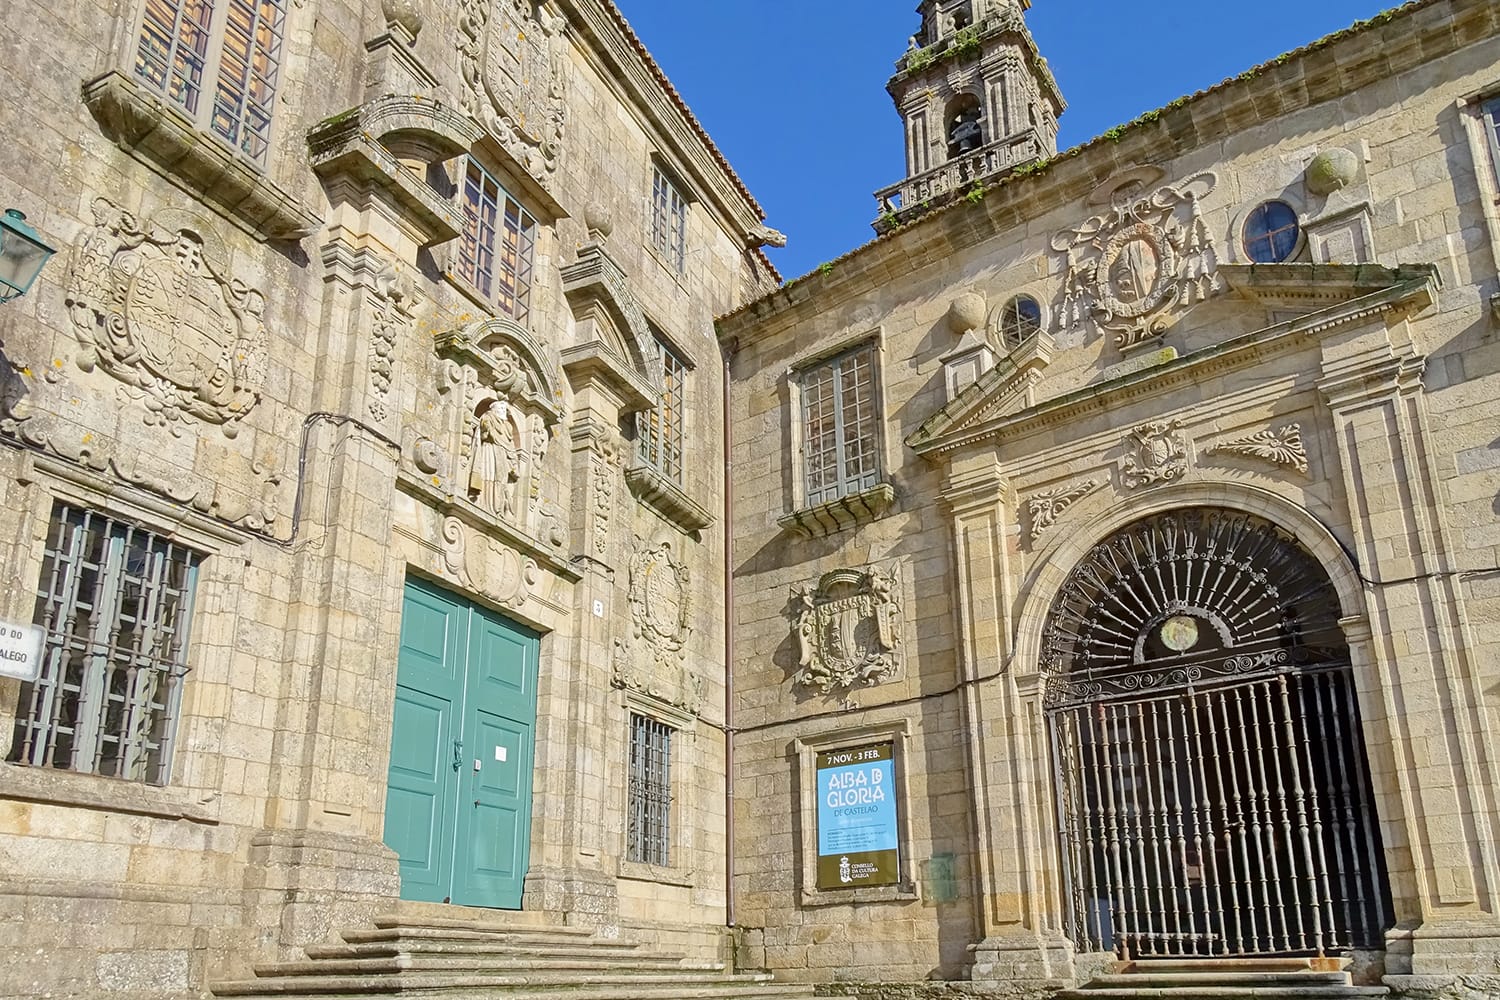 Museo do Pobo Galego in Santiago de Compostela, Spain